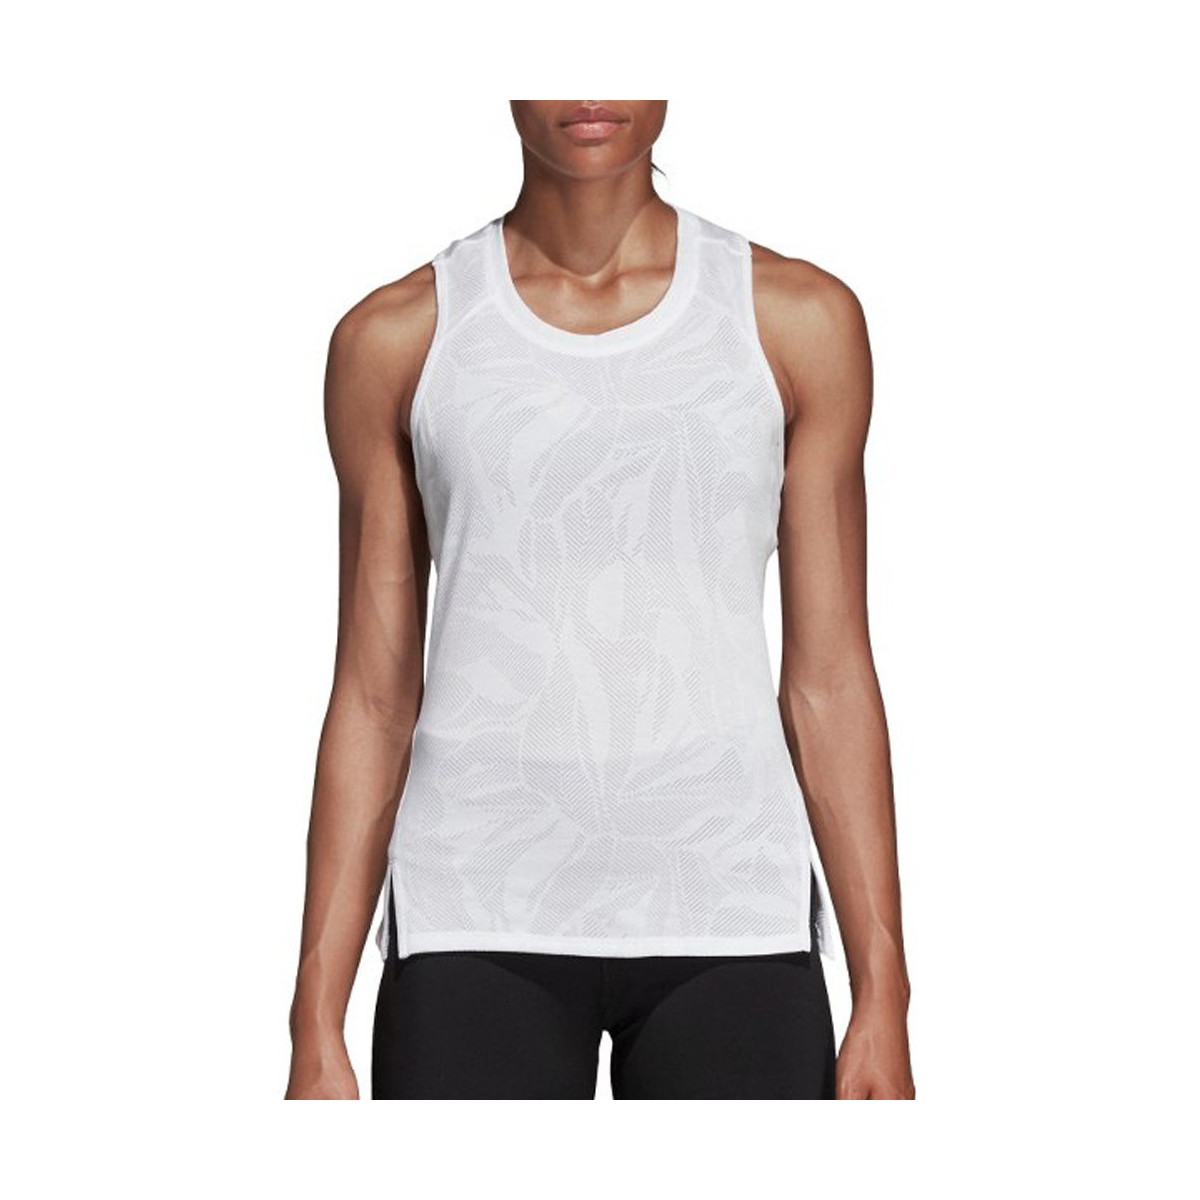 Vêtements Femme Débardeurs / T-shirts sans manche adidas Originals DQ3153 Blanc